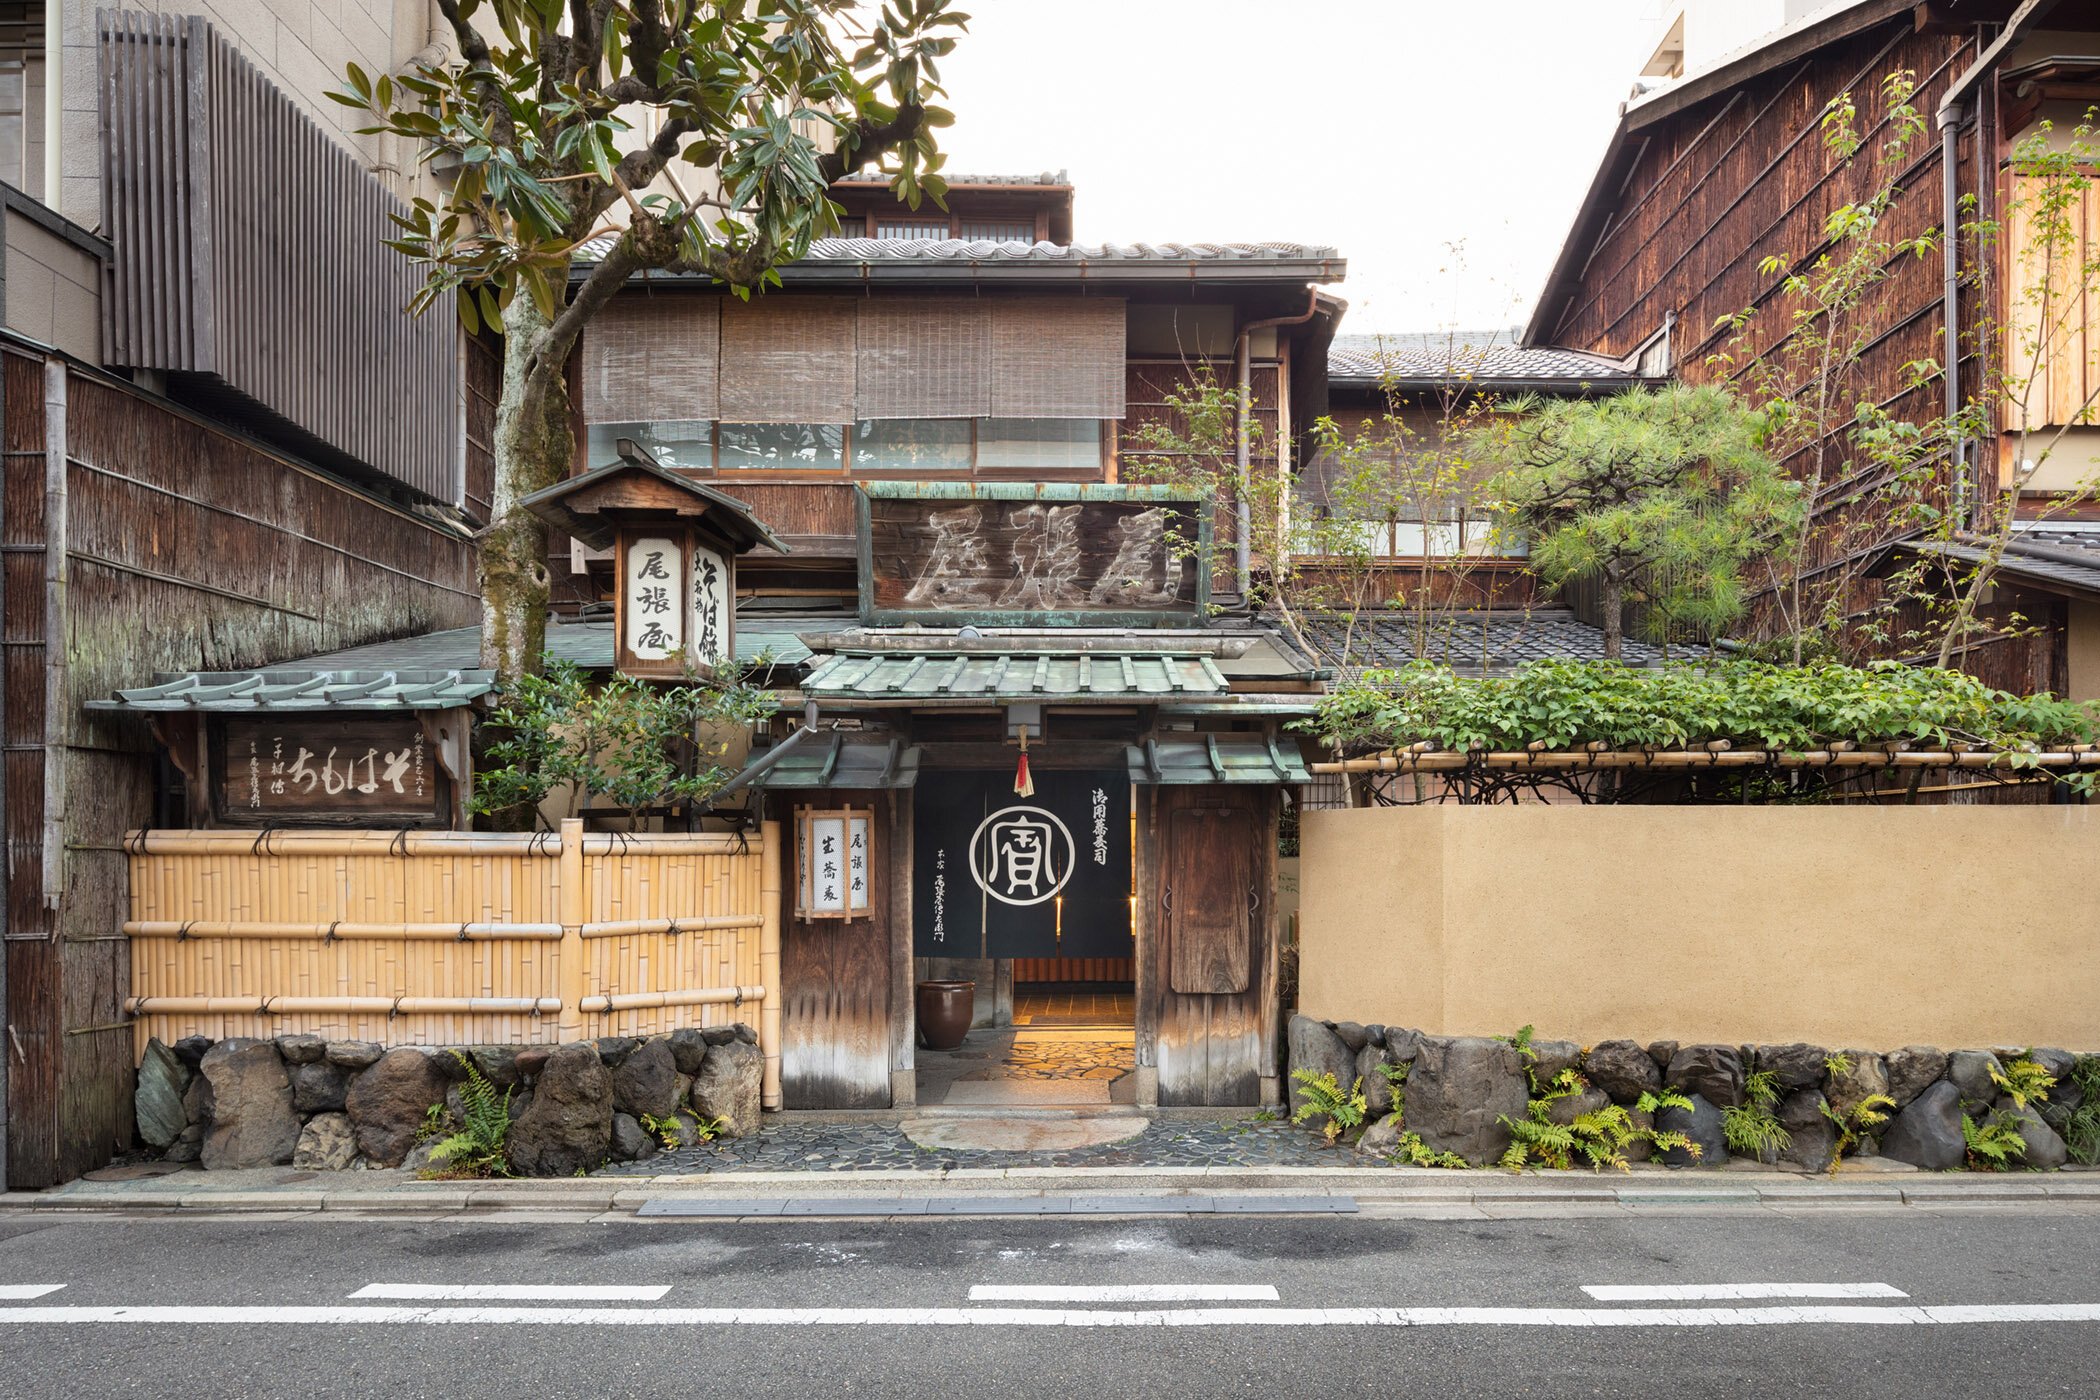  柳原照弘 Teruhiro Yanagihara Studioがインテリアデザインを手掛けた京都の尾張屋本店 菓子処の外観 